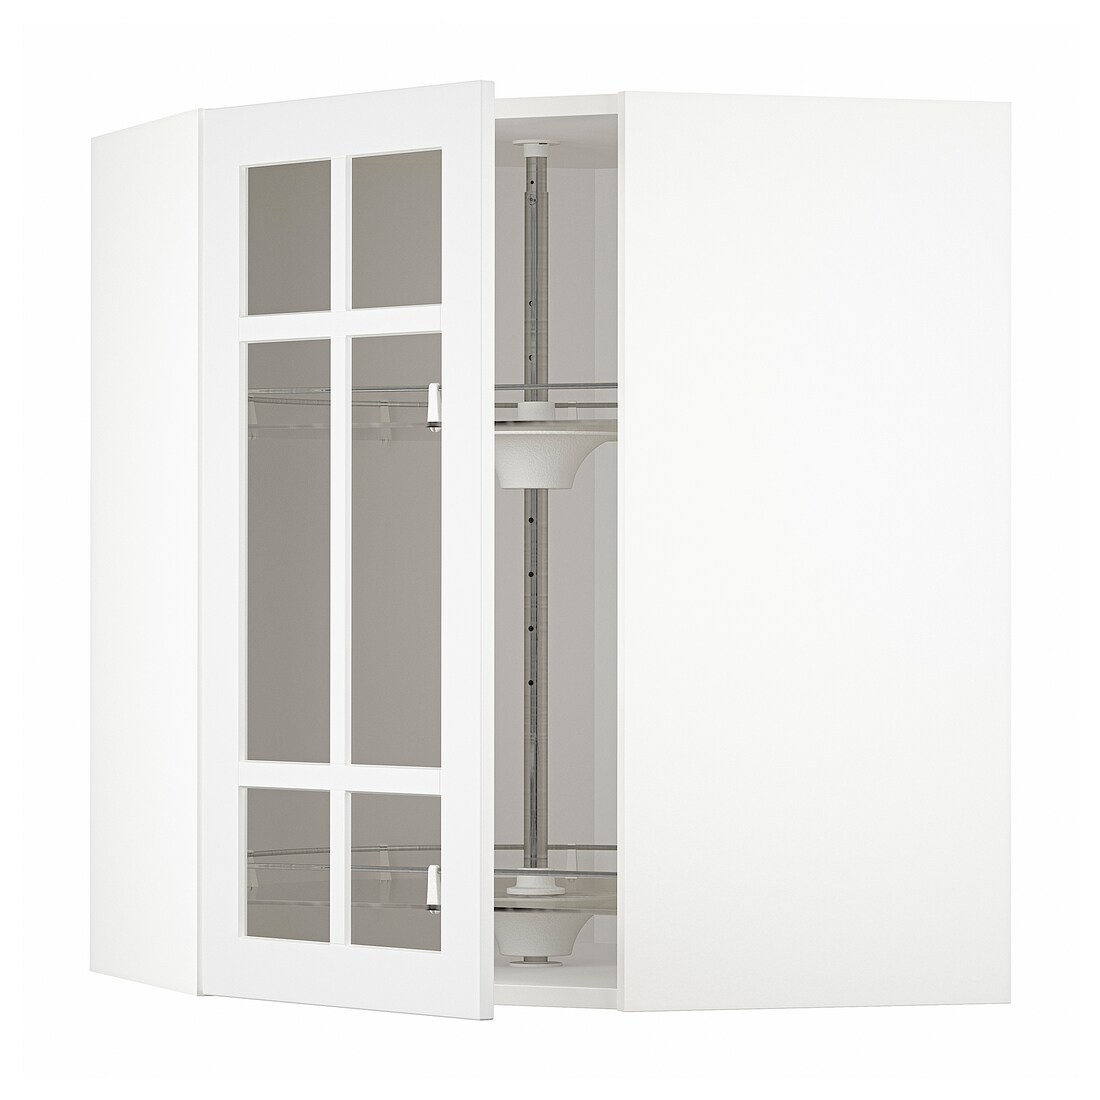 METOD МЕТОД Угловой настенный шкаф с каруселью / стеклянная дверь, белый / Stensund белый, 68x80 см